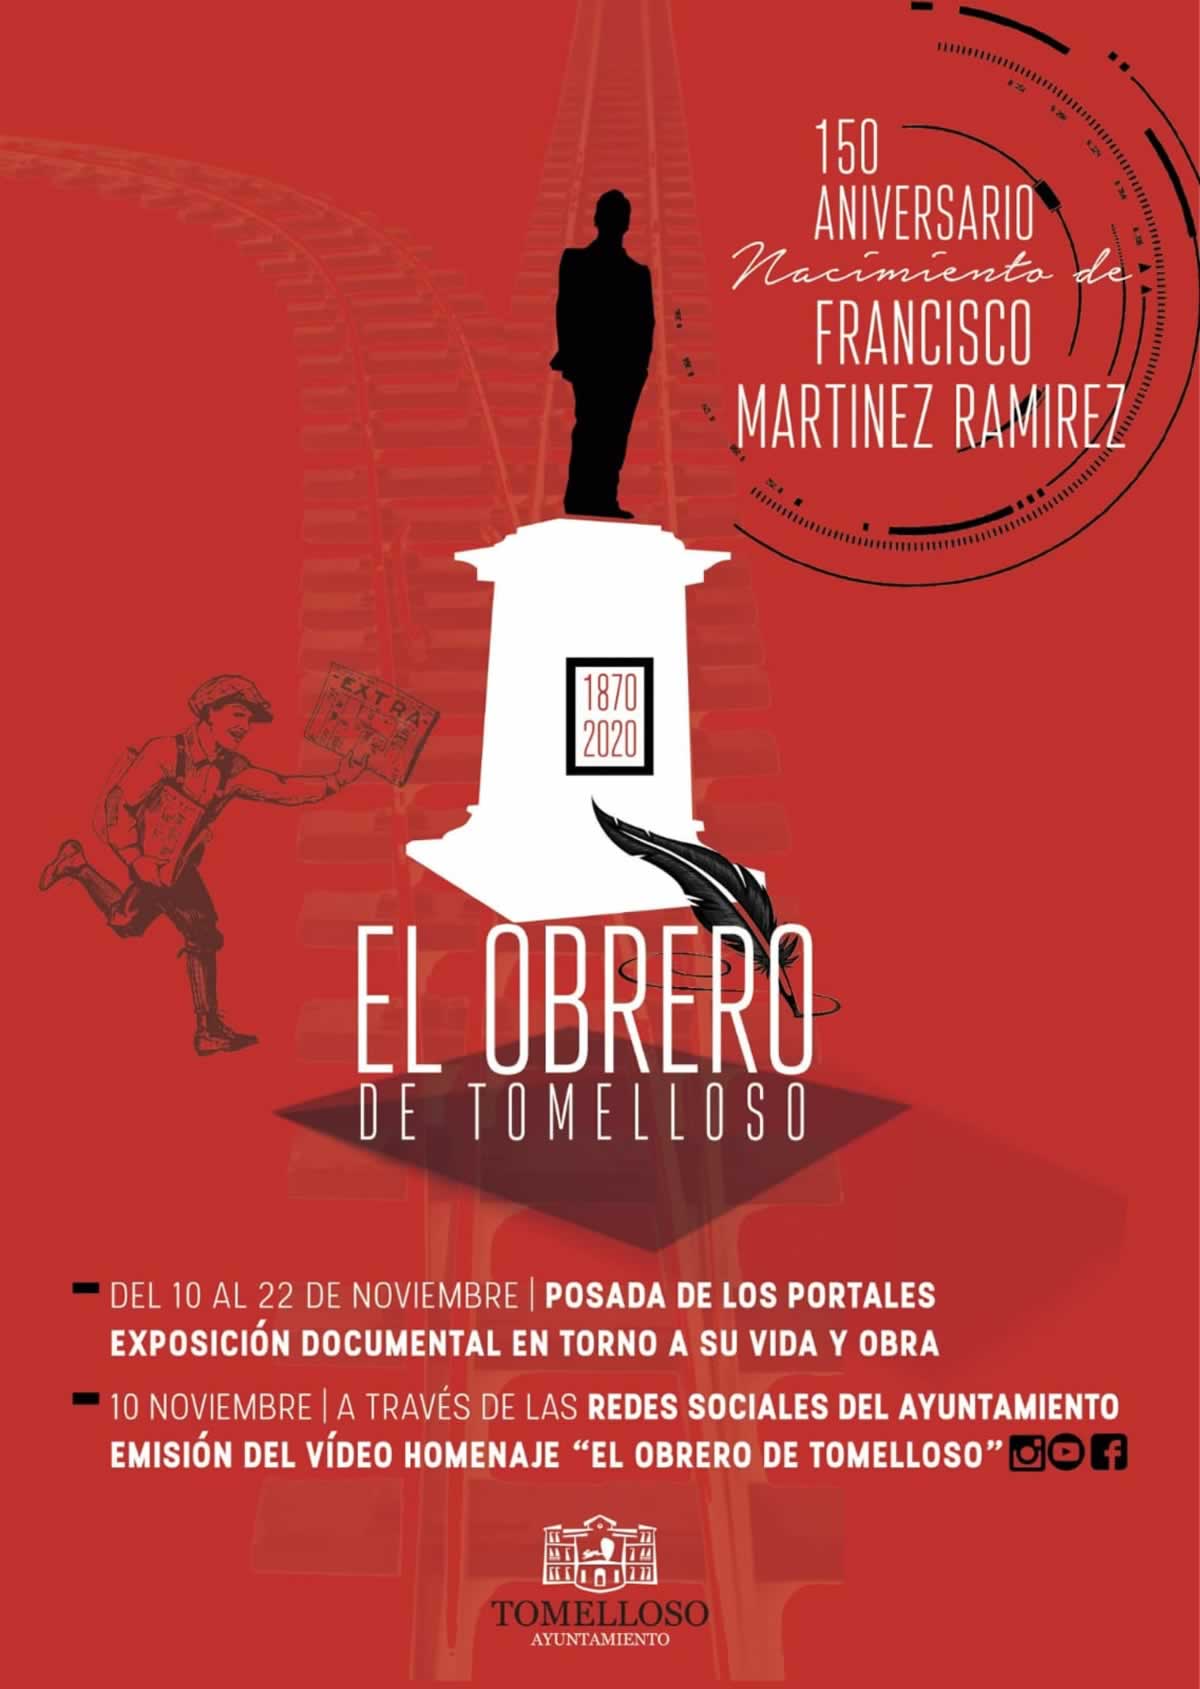 Desde mañana martes se conmemora el 150 aniversario del nacimiento de Francisco Martínez Ramírez "El Obrero"